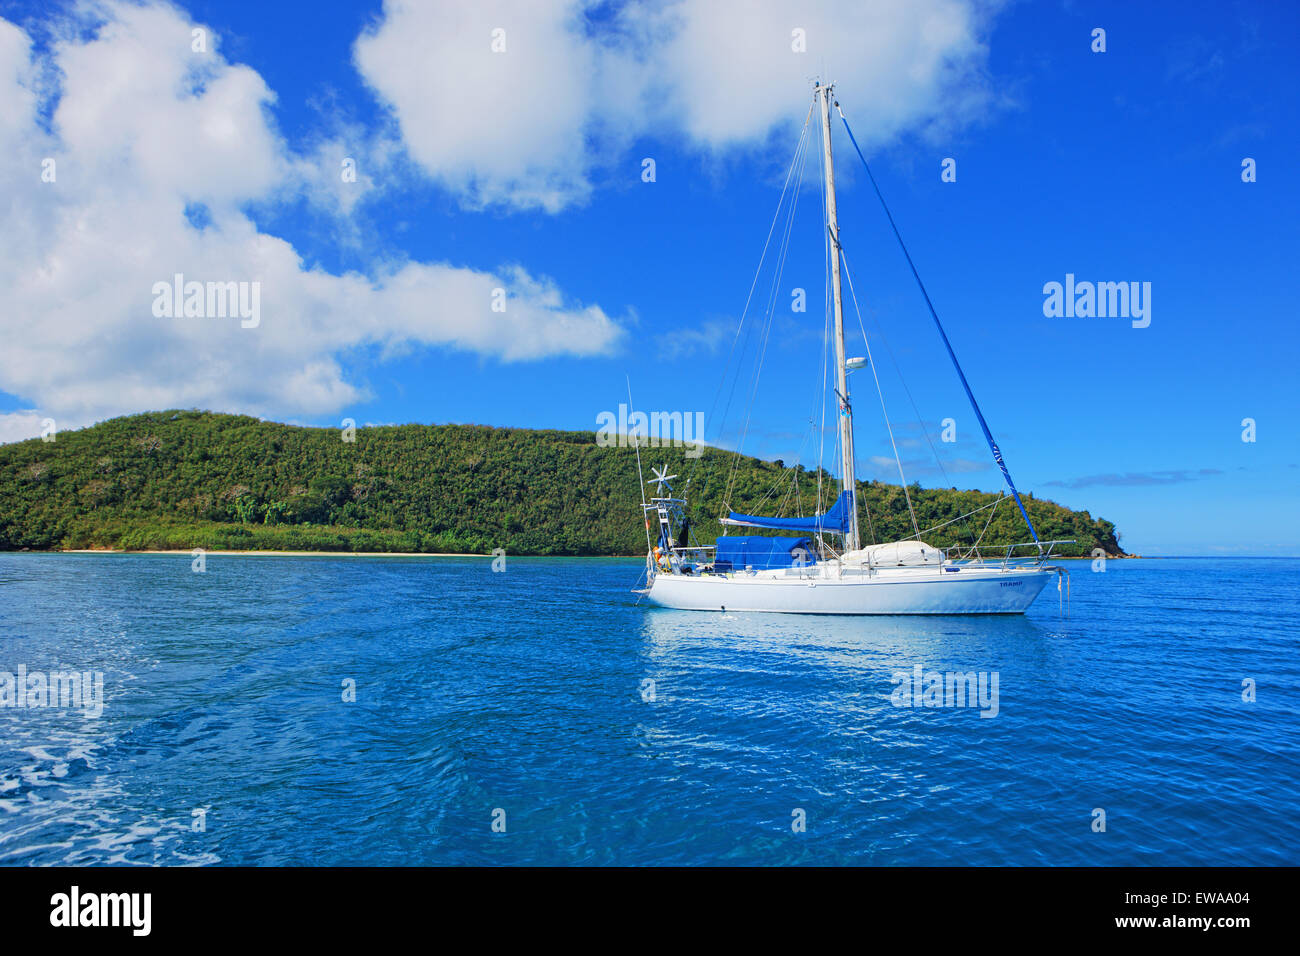 Buque náuticas, Drawaqa Island, el grupo de islas Yasawa, Fiji, Islas del Pacífico Sur, Pacífico Foto de stock